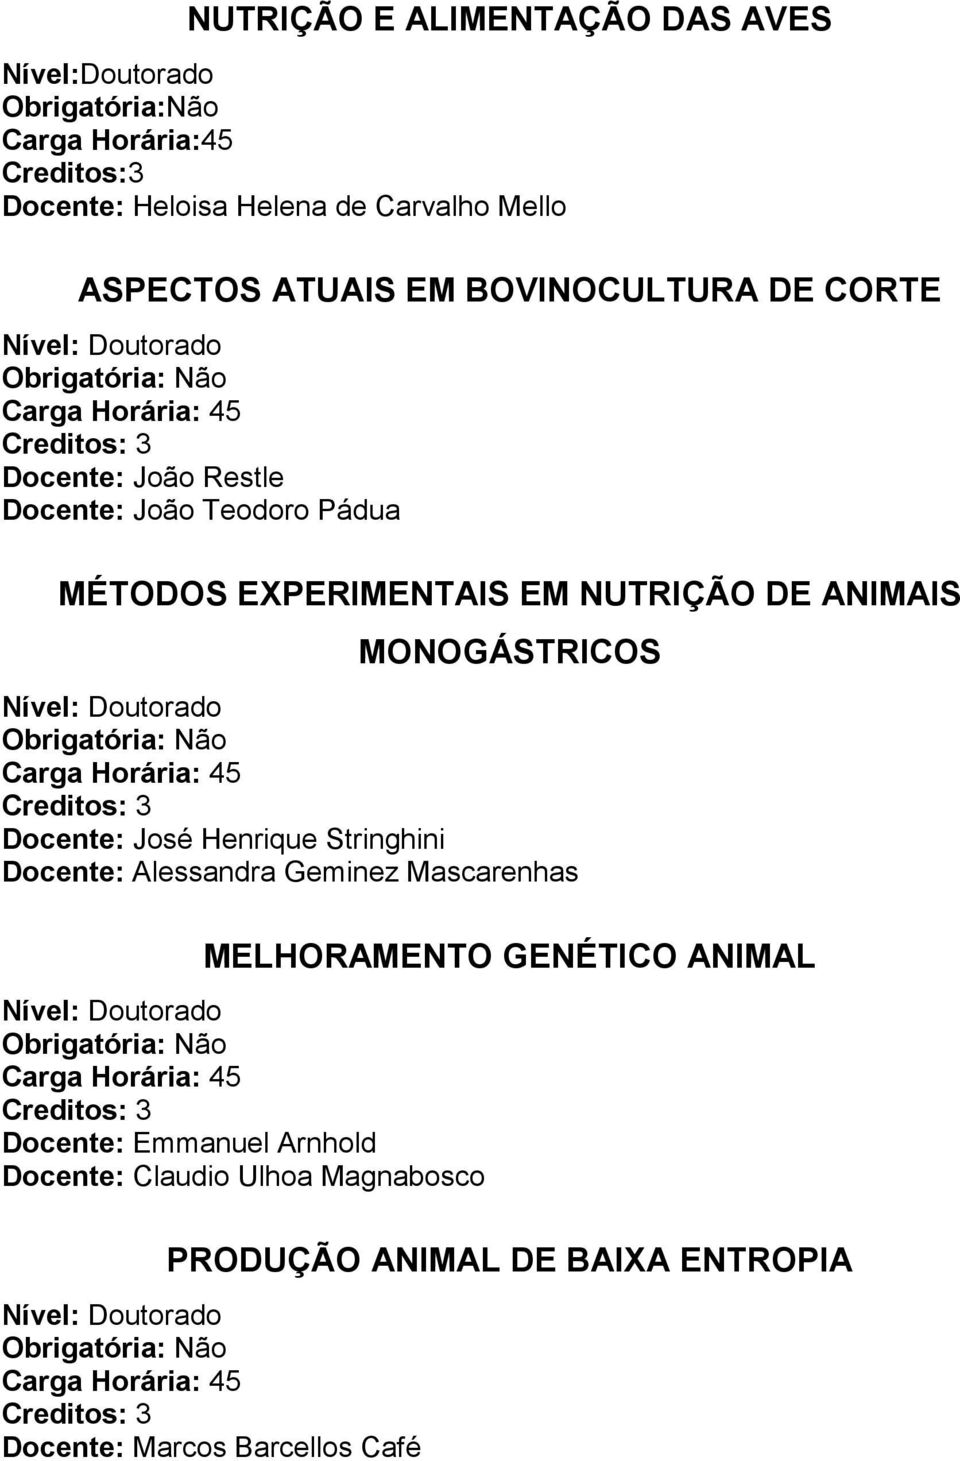 NUTRIÇÃO DE ANIMAIS MONOGÁSTRICOS Docente: José Henrique Stringhini Docente: Alessandra Geminez Mascarenhas MELHORAMENTO